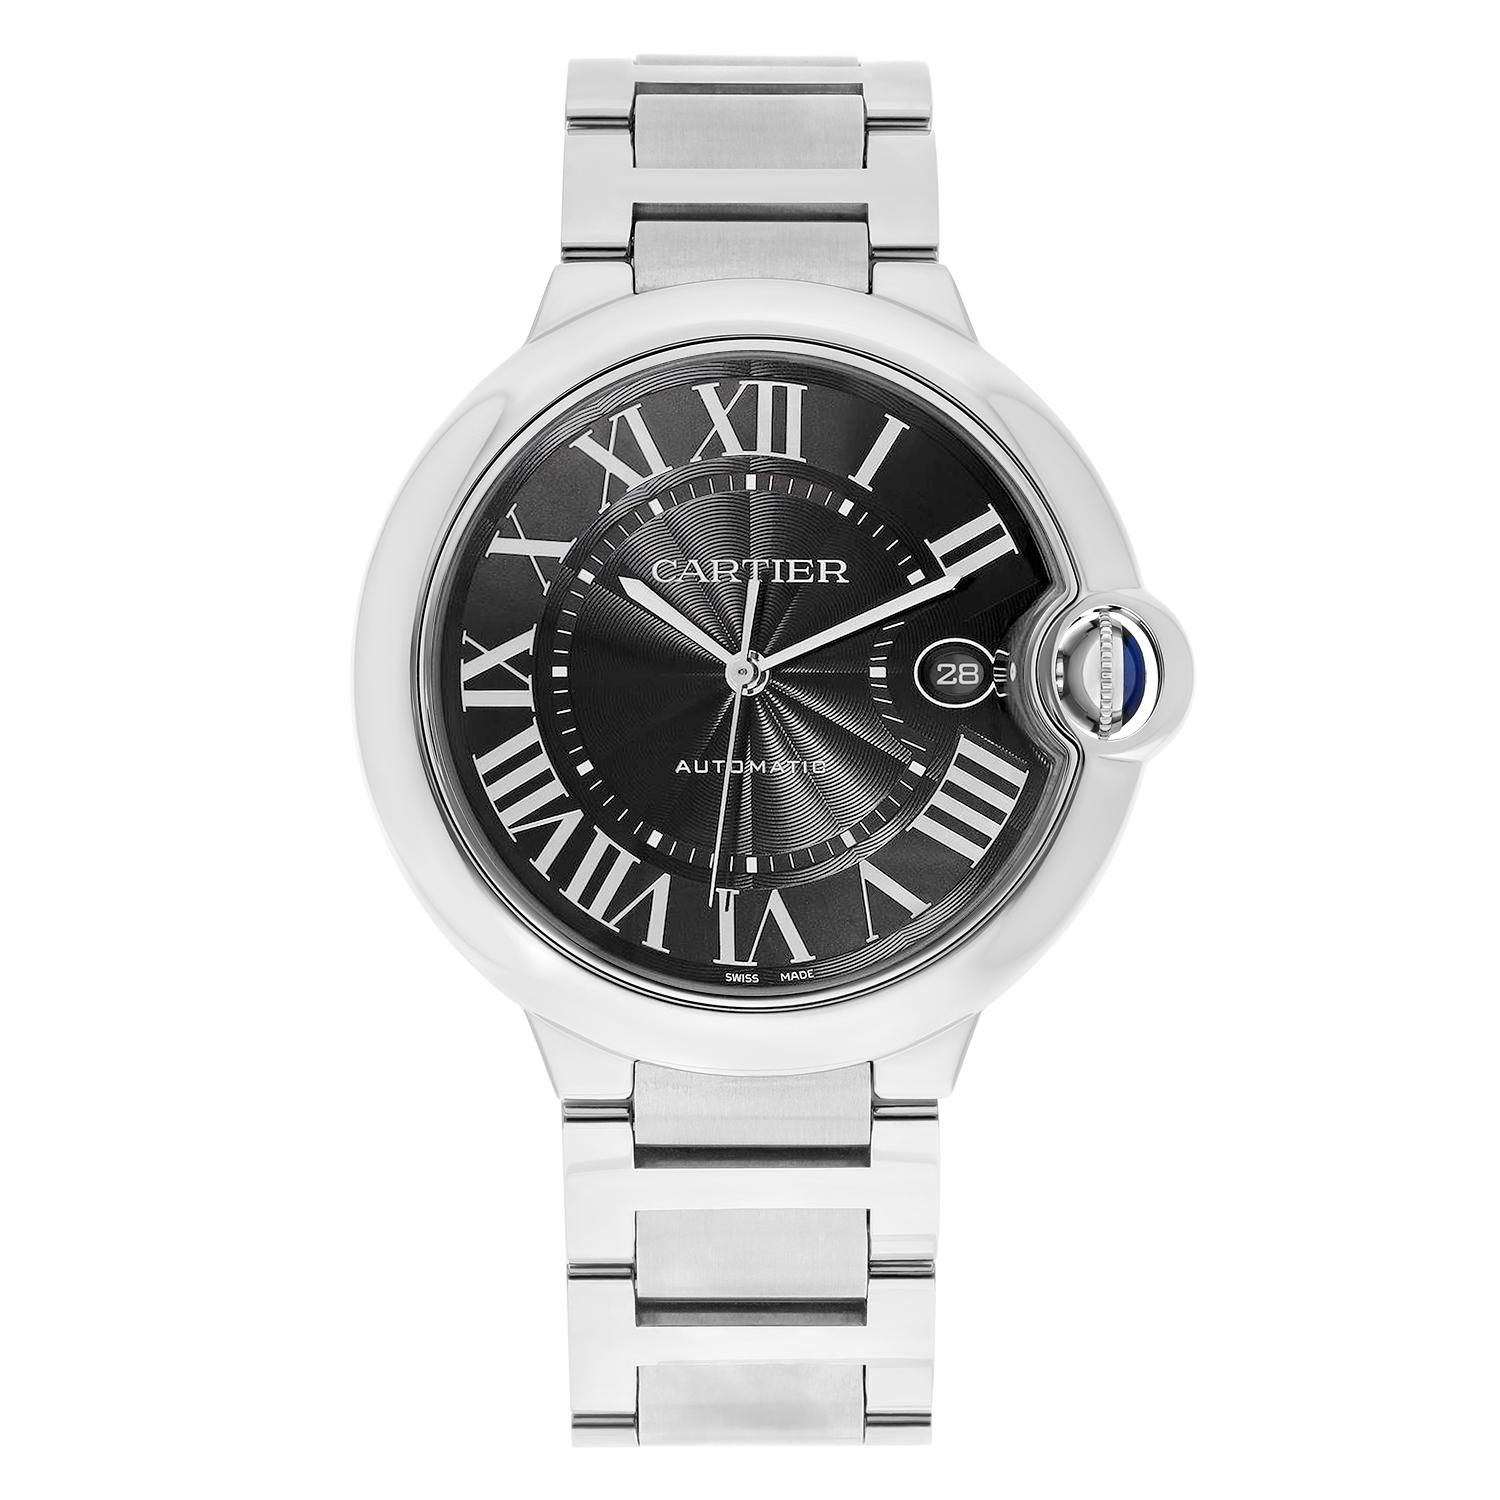 Élevez votre style avec la montre-bracelet Ballon Bleu de Cartier, un accessoire parfait pour toutes les occasions. Ce garde-temps de luxe fabriqué en Suisse est doté d'un élégant bracelet en acier inoxydable et d'un boîtier rond de 40 mm, ce qui